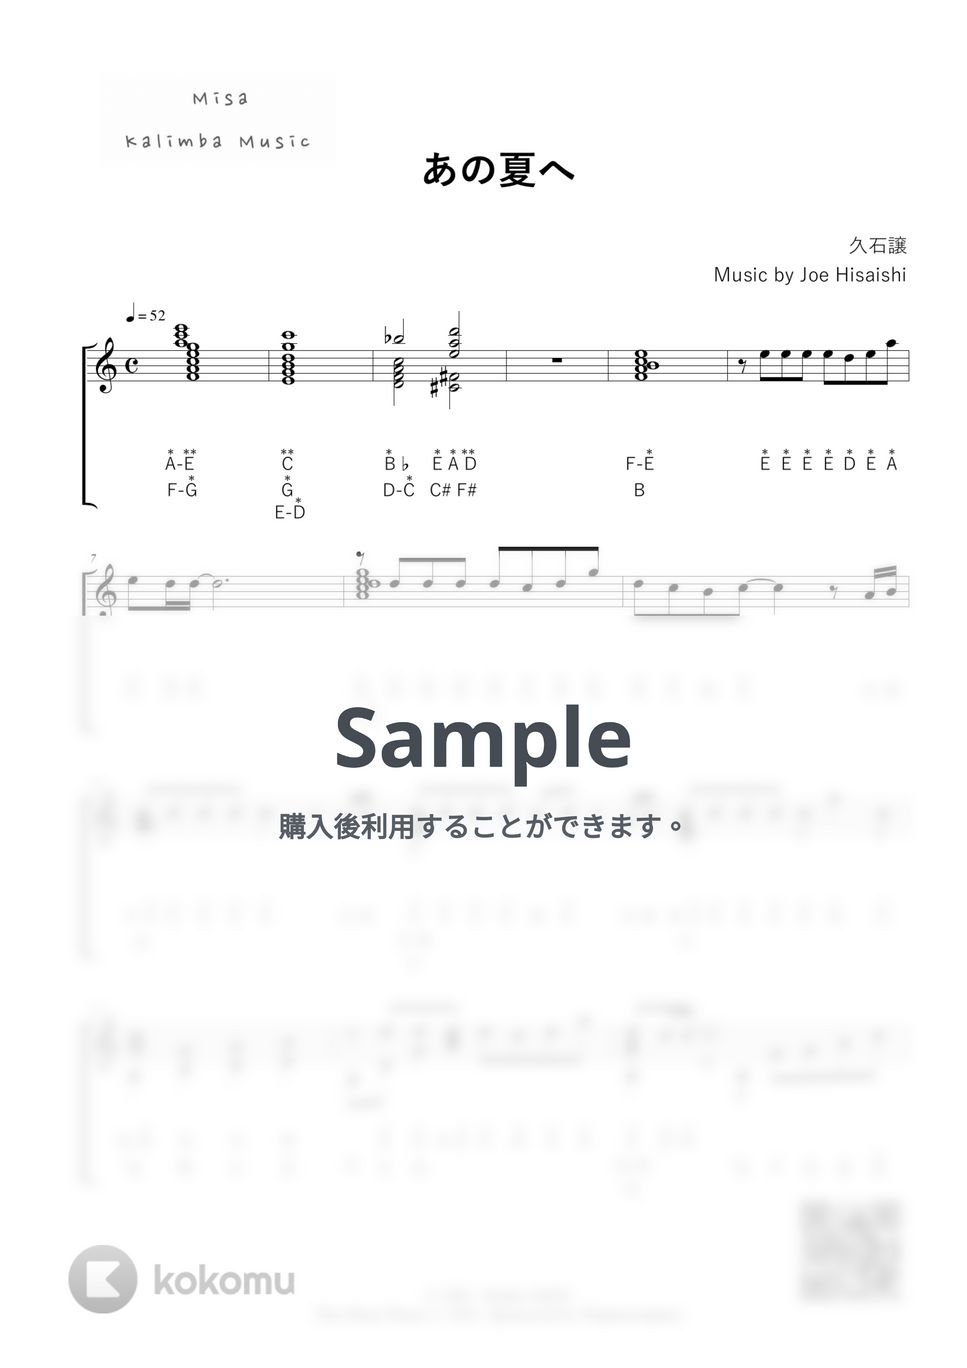 久石譲 - あの夏へ / 34音カリンバ / 英音名表記 (模範演奏付き) by Misa / Kalimba Music